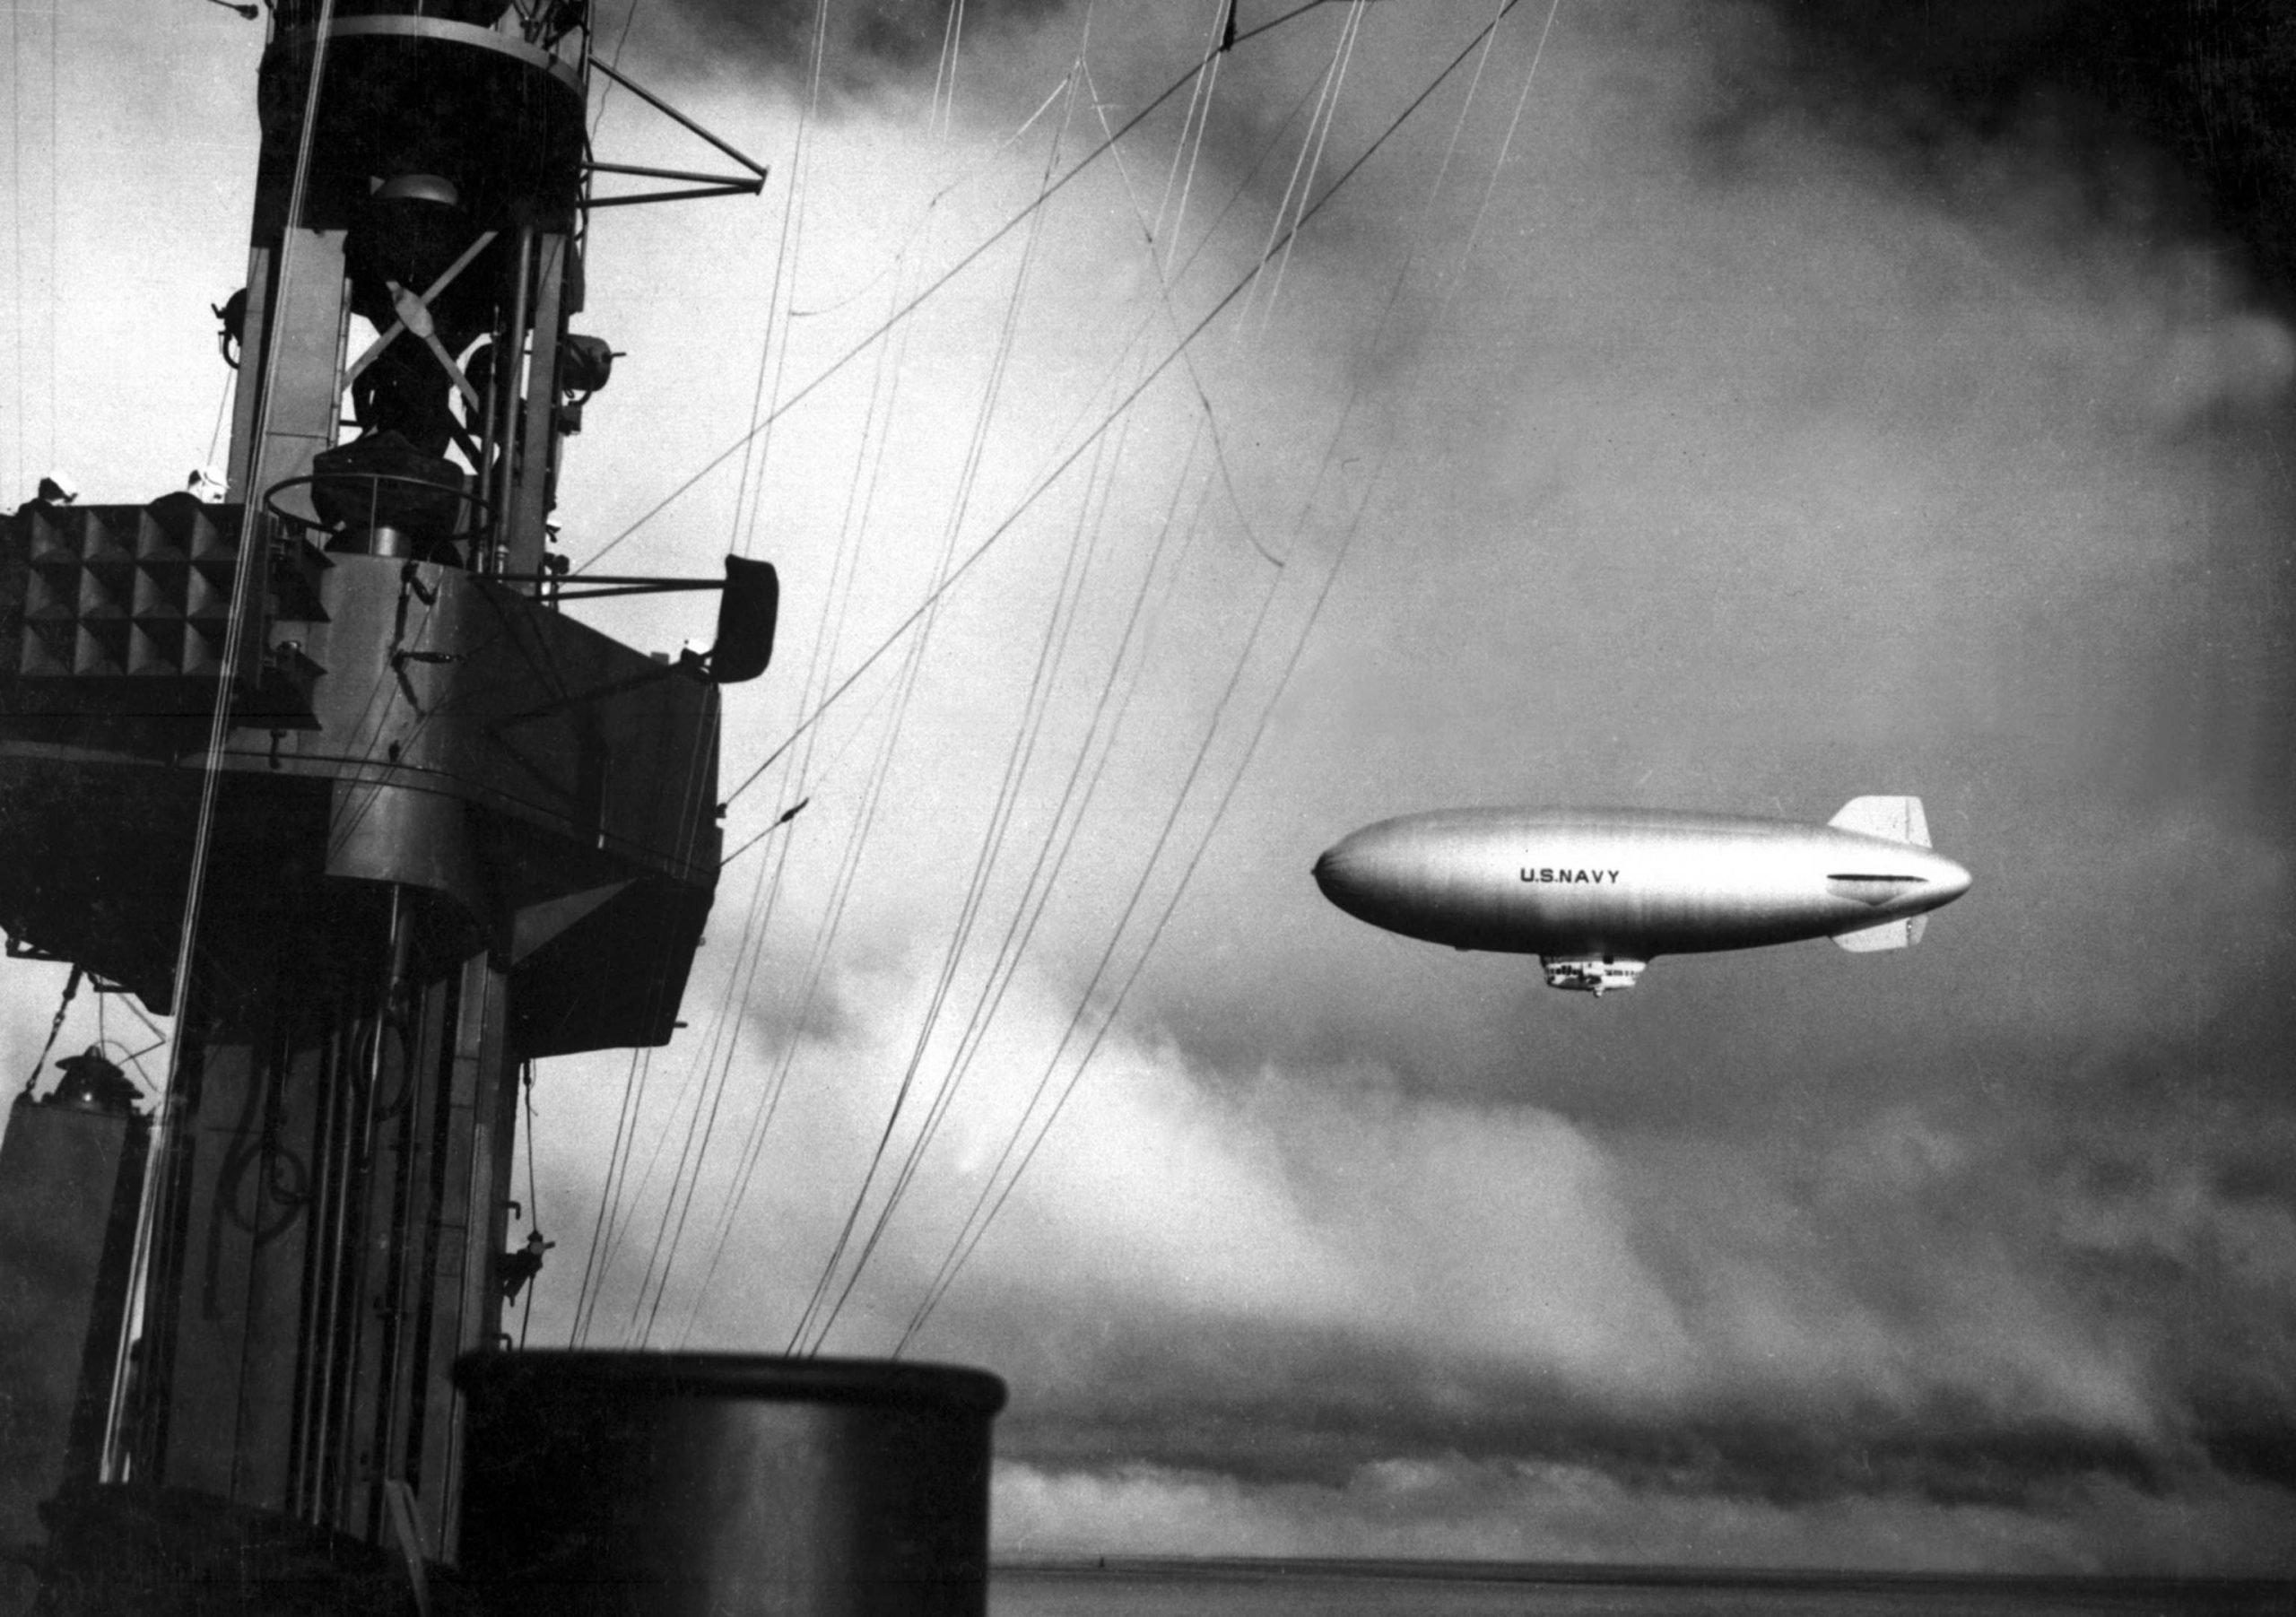 US Navy airship